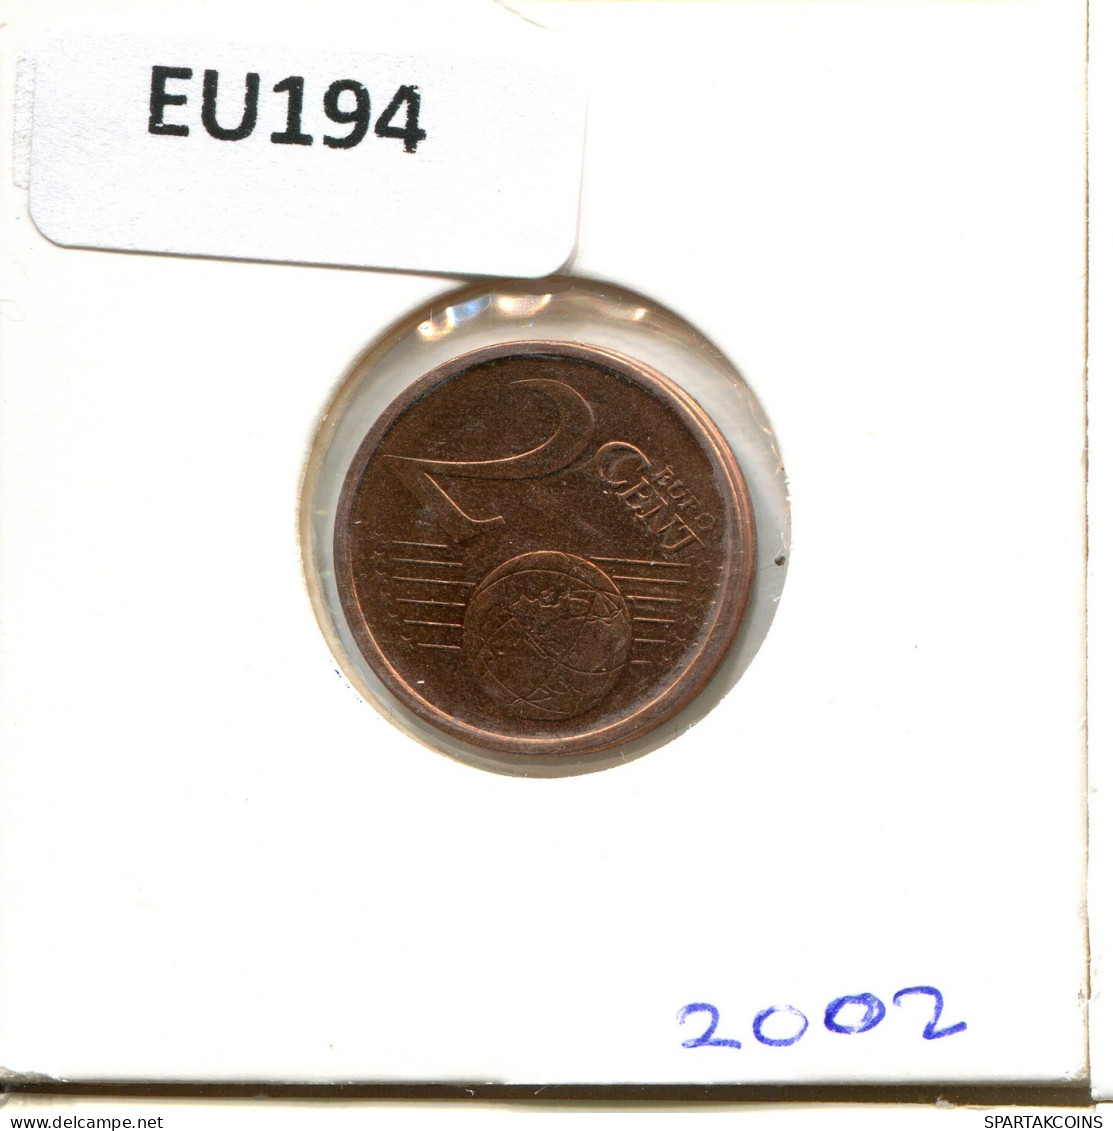 2 EURO CENTS 2002 IRLANDA IRELAND Moneda #EU194.E - Ierland